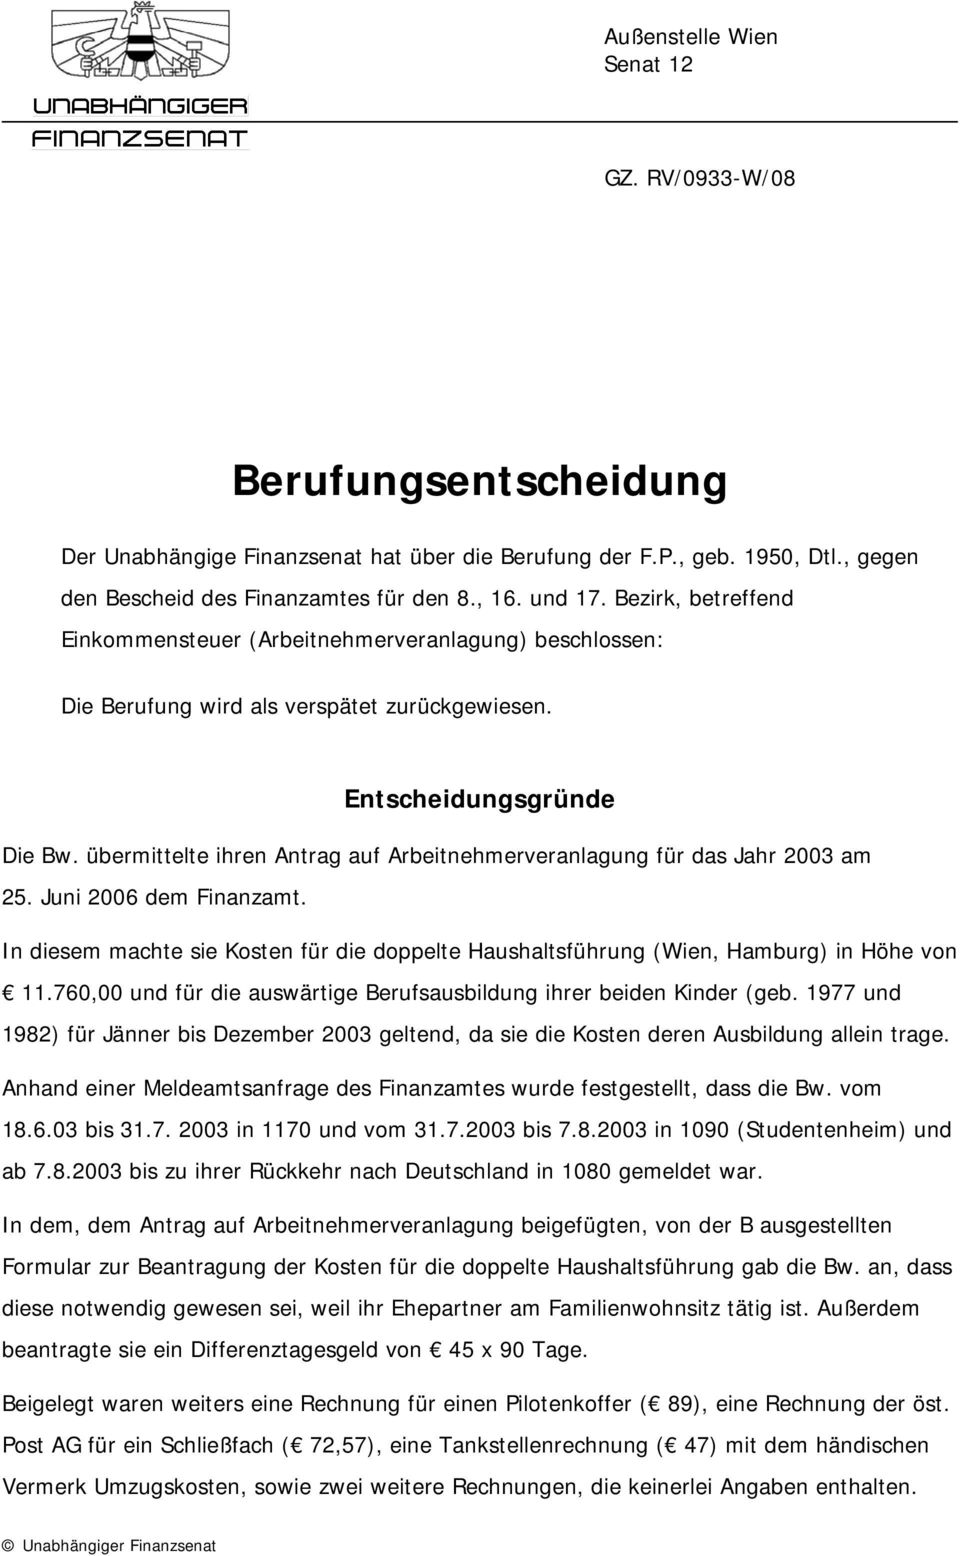 übermittelte ihren Antrag auf Arbeitnehmerveranlagung für das Jahr 2003 am 25. Juni 2006 dem Finanzamt. In diesem machte sie Kosten für die doppelte Haushaltsführung (Wien, Hamburg) in Höhe von 11.